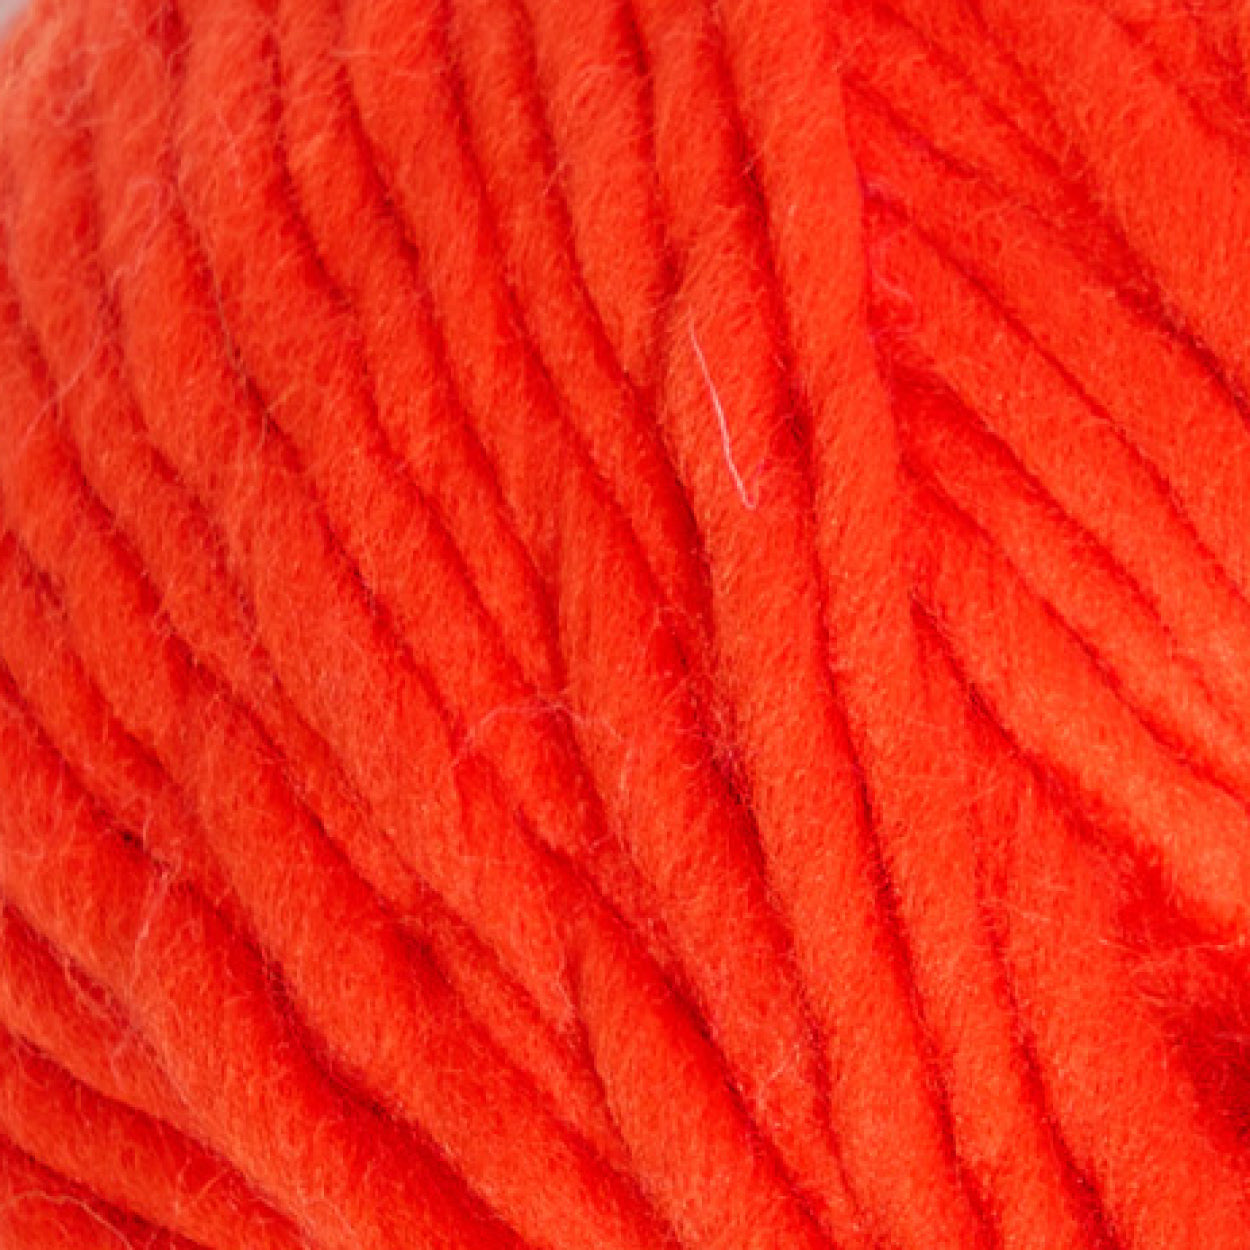 Merino Wool- Scarlet Red